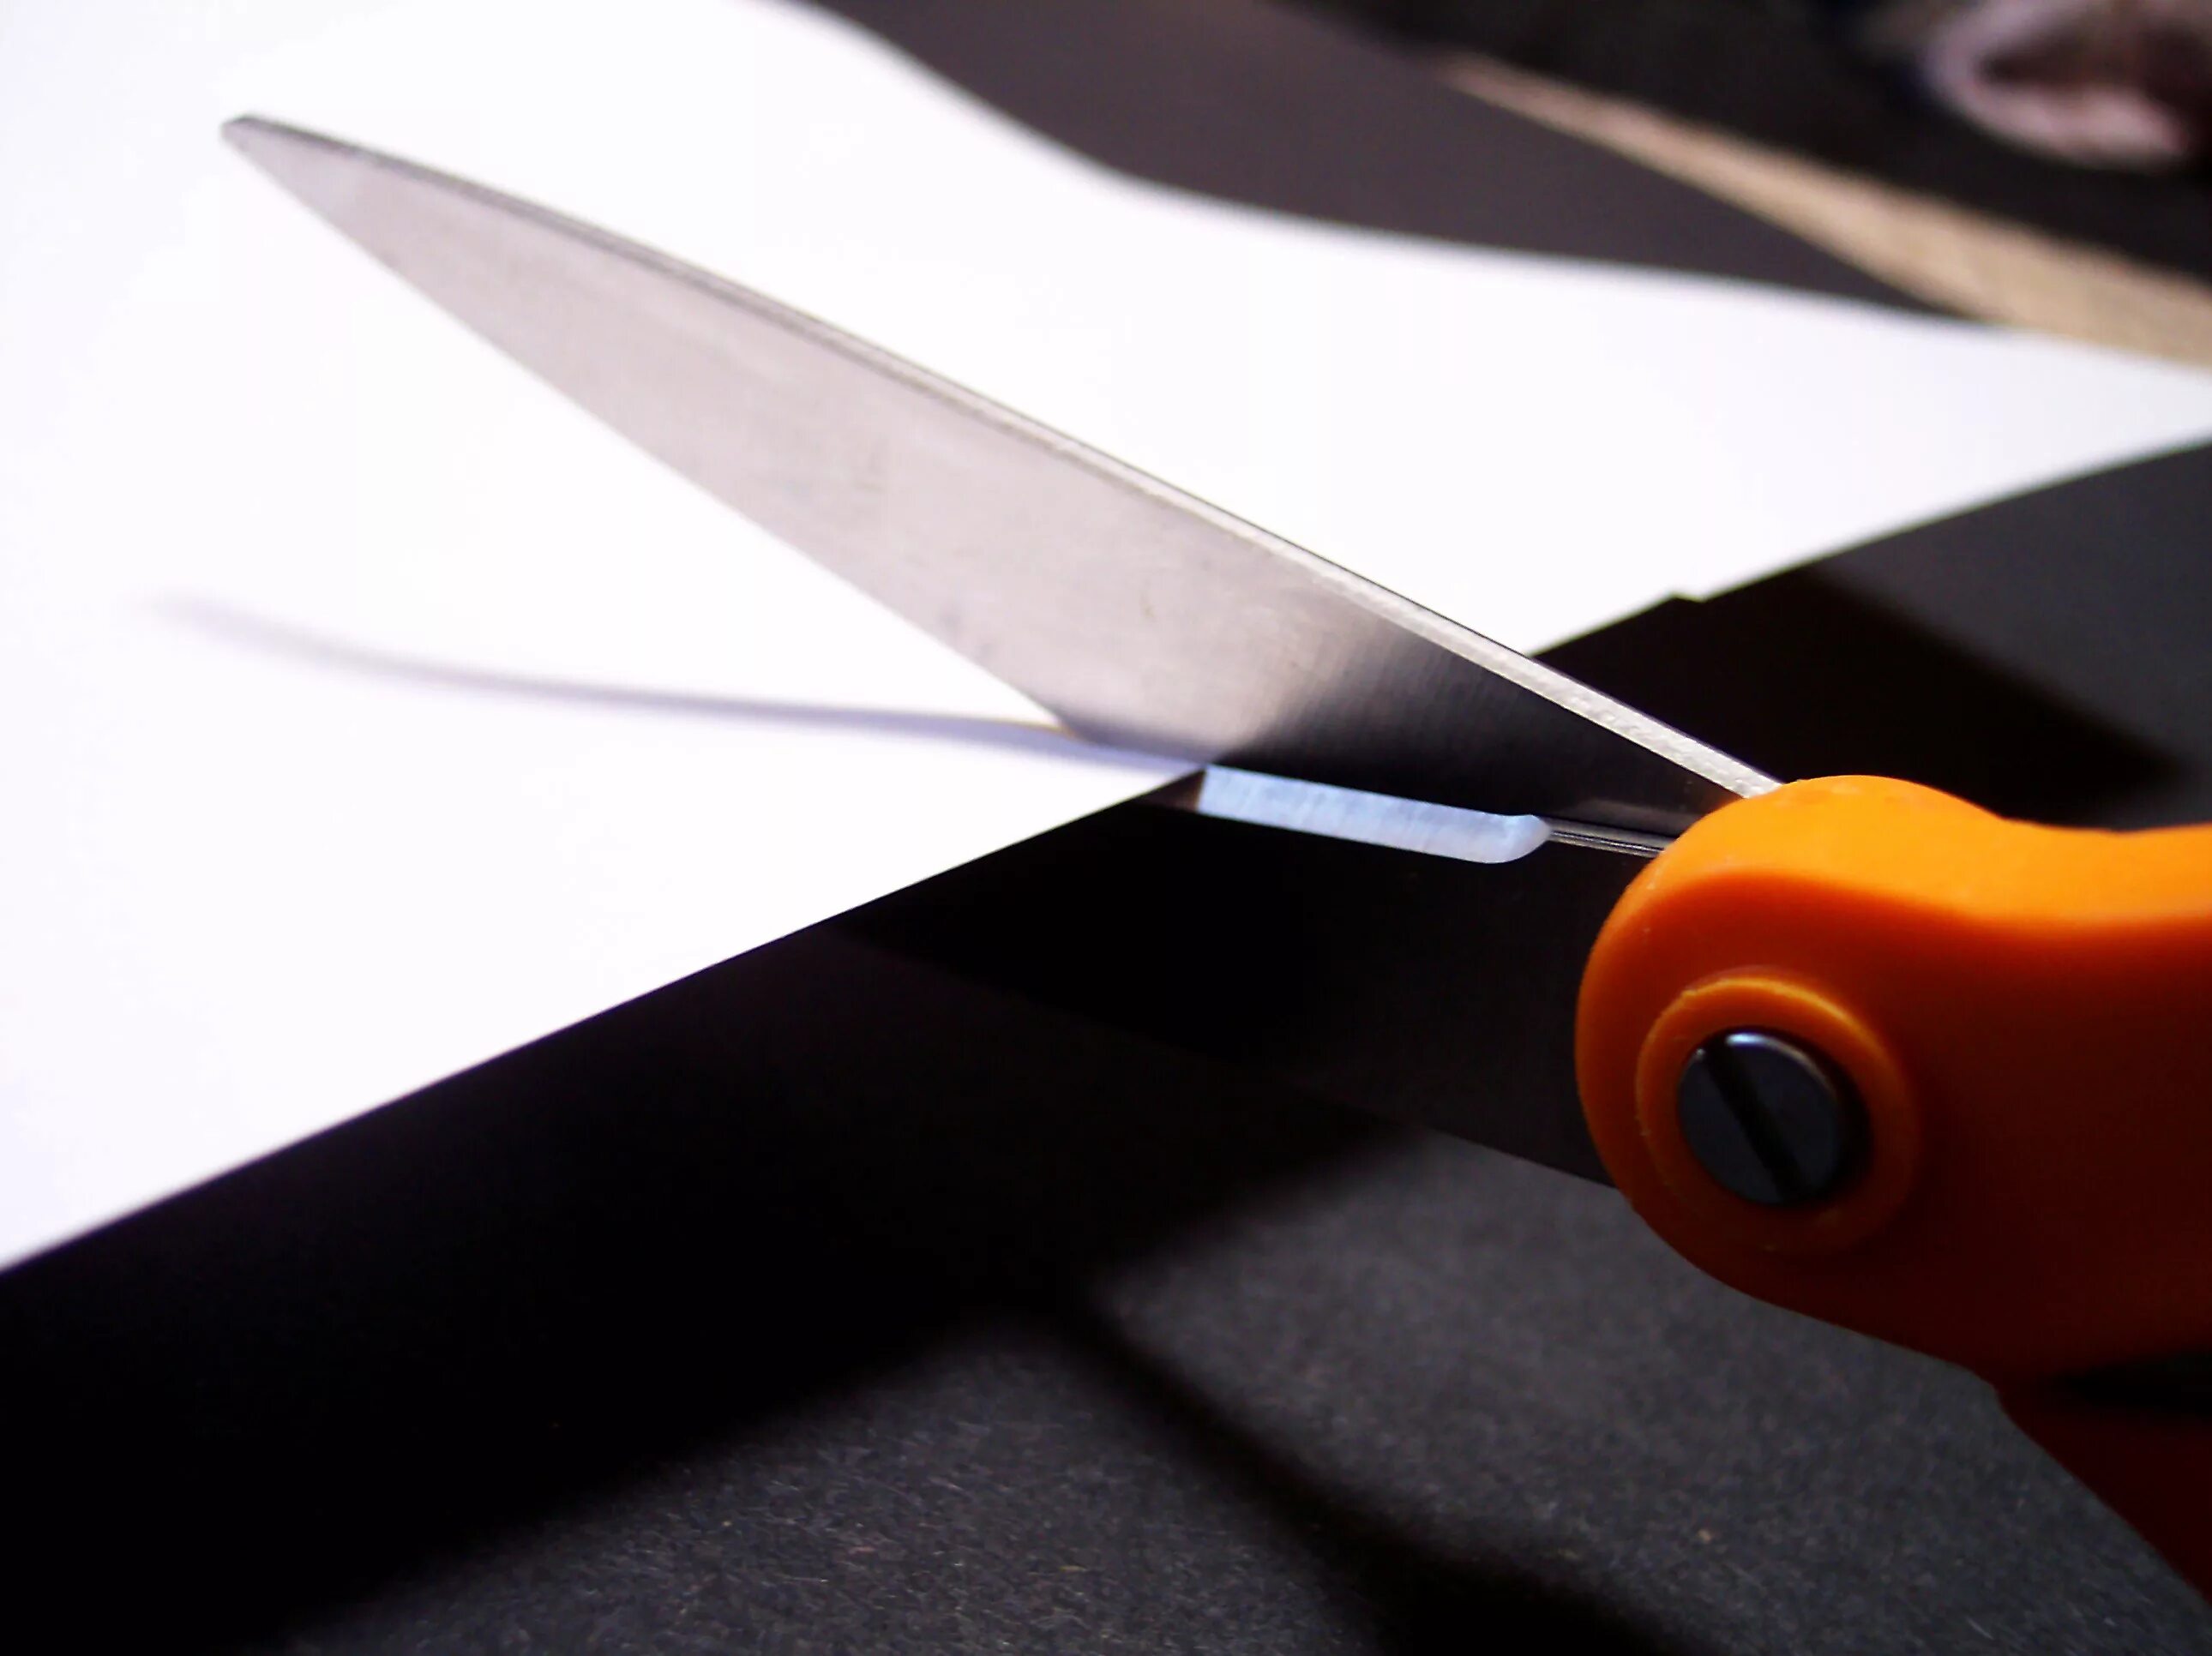 Отрезать ножницами. Разрезание бумаги ножницами. Ножницы режущие бумагу. Ножницы режут бумагу.